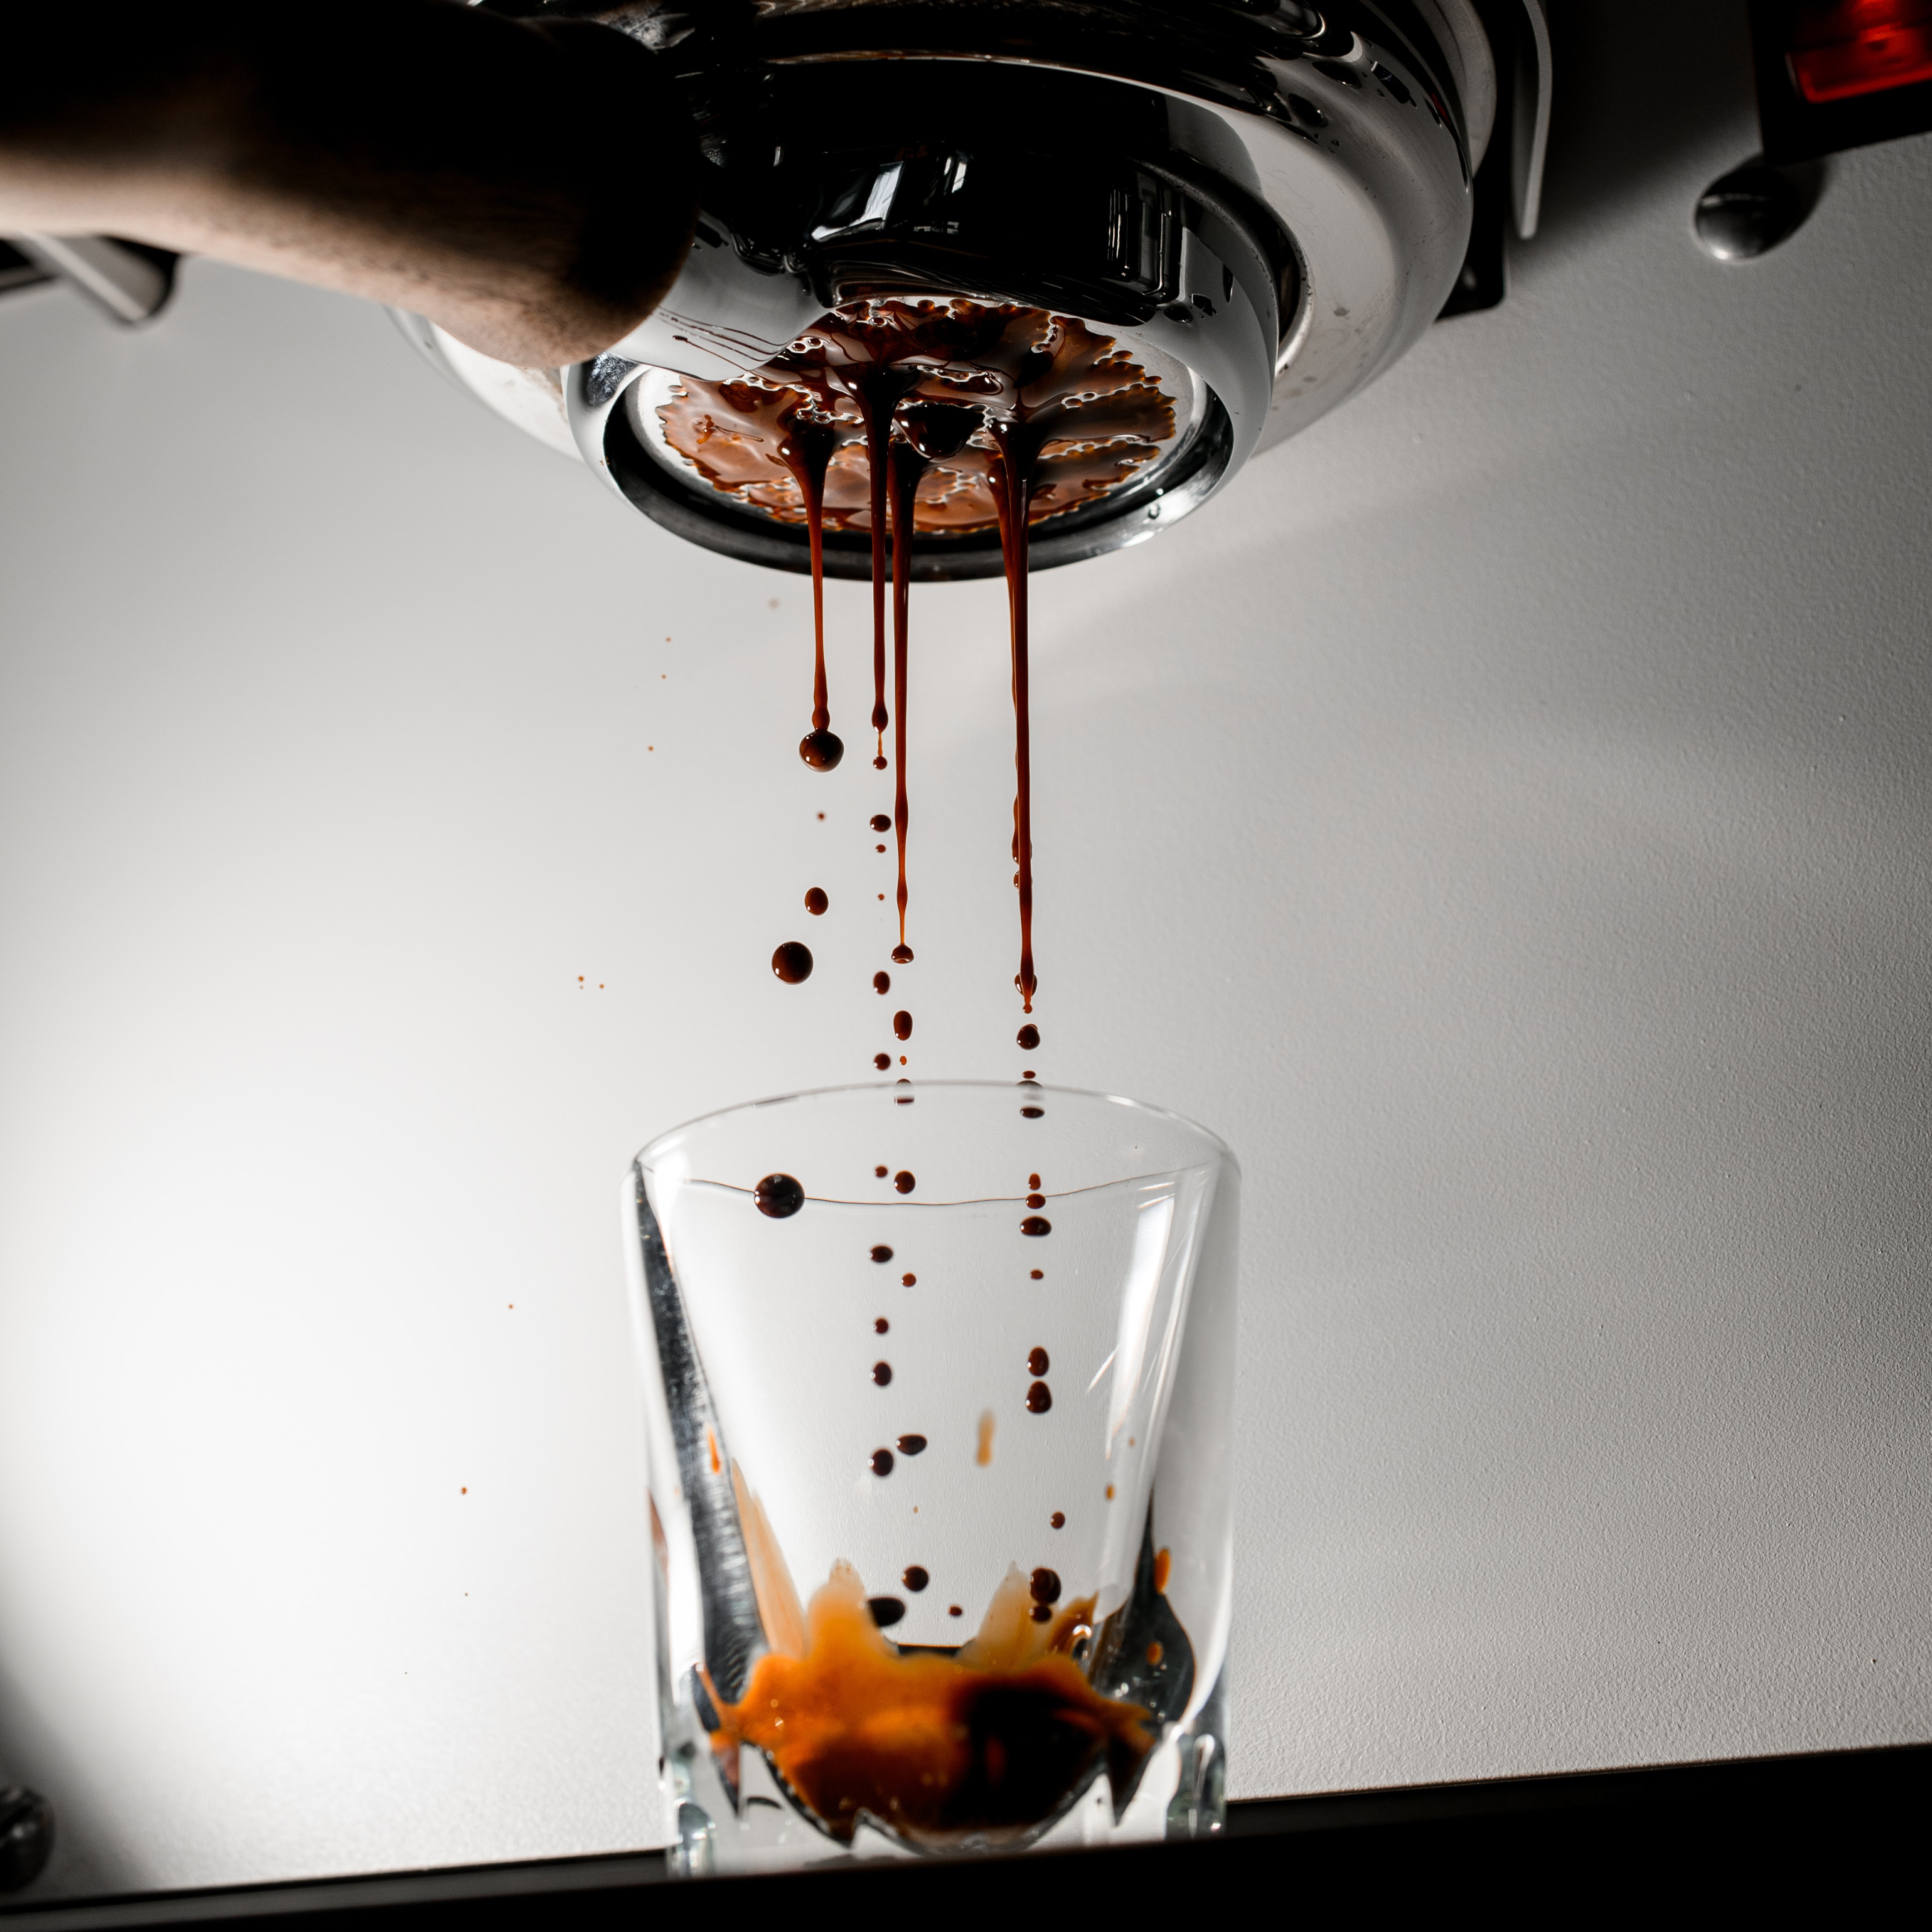 Ein Bild von einem Espresso bei der Zubereitung durch eine Siebträgermaschine.